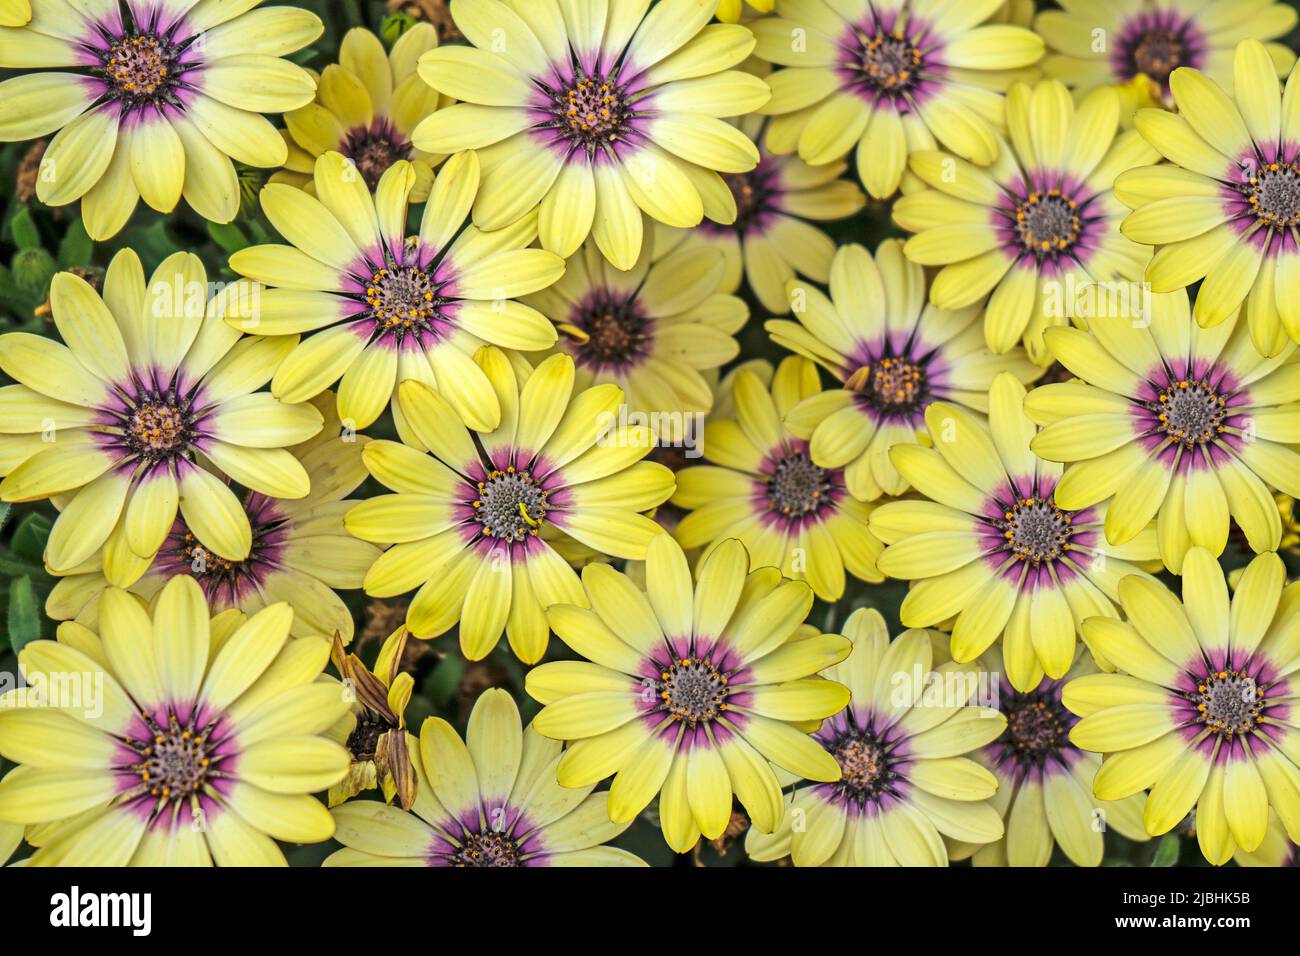 Die Blumen von Blue Eyed Beauty Osteospermum füllen das Bild mit Farbe. Stockfoto